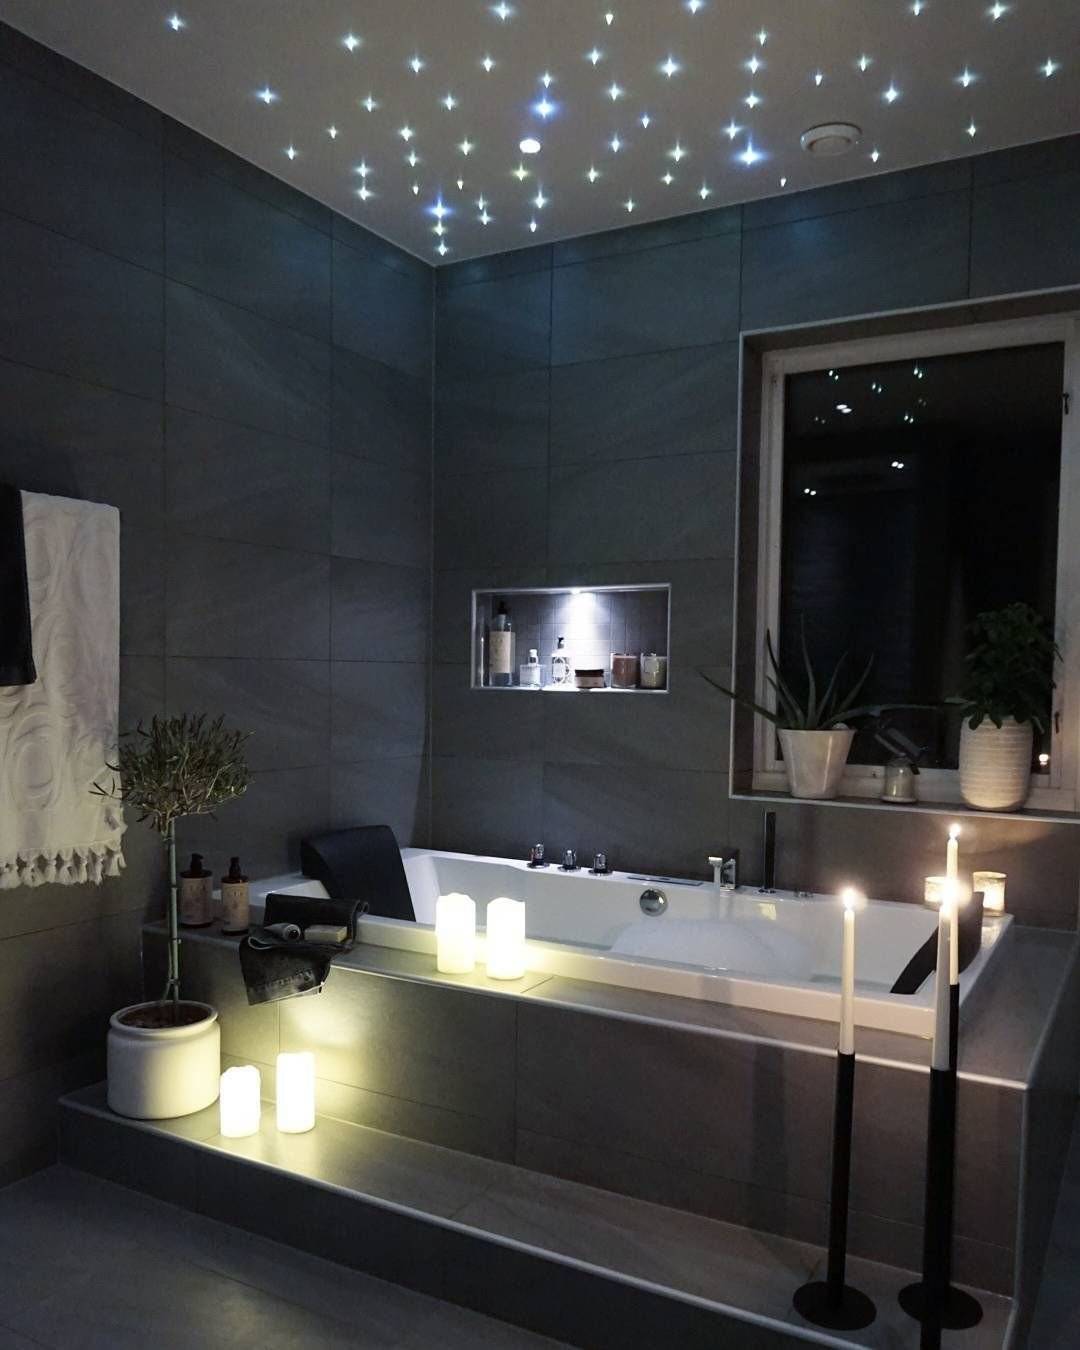 Правильное освещение ванной комнаты